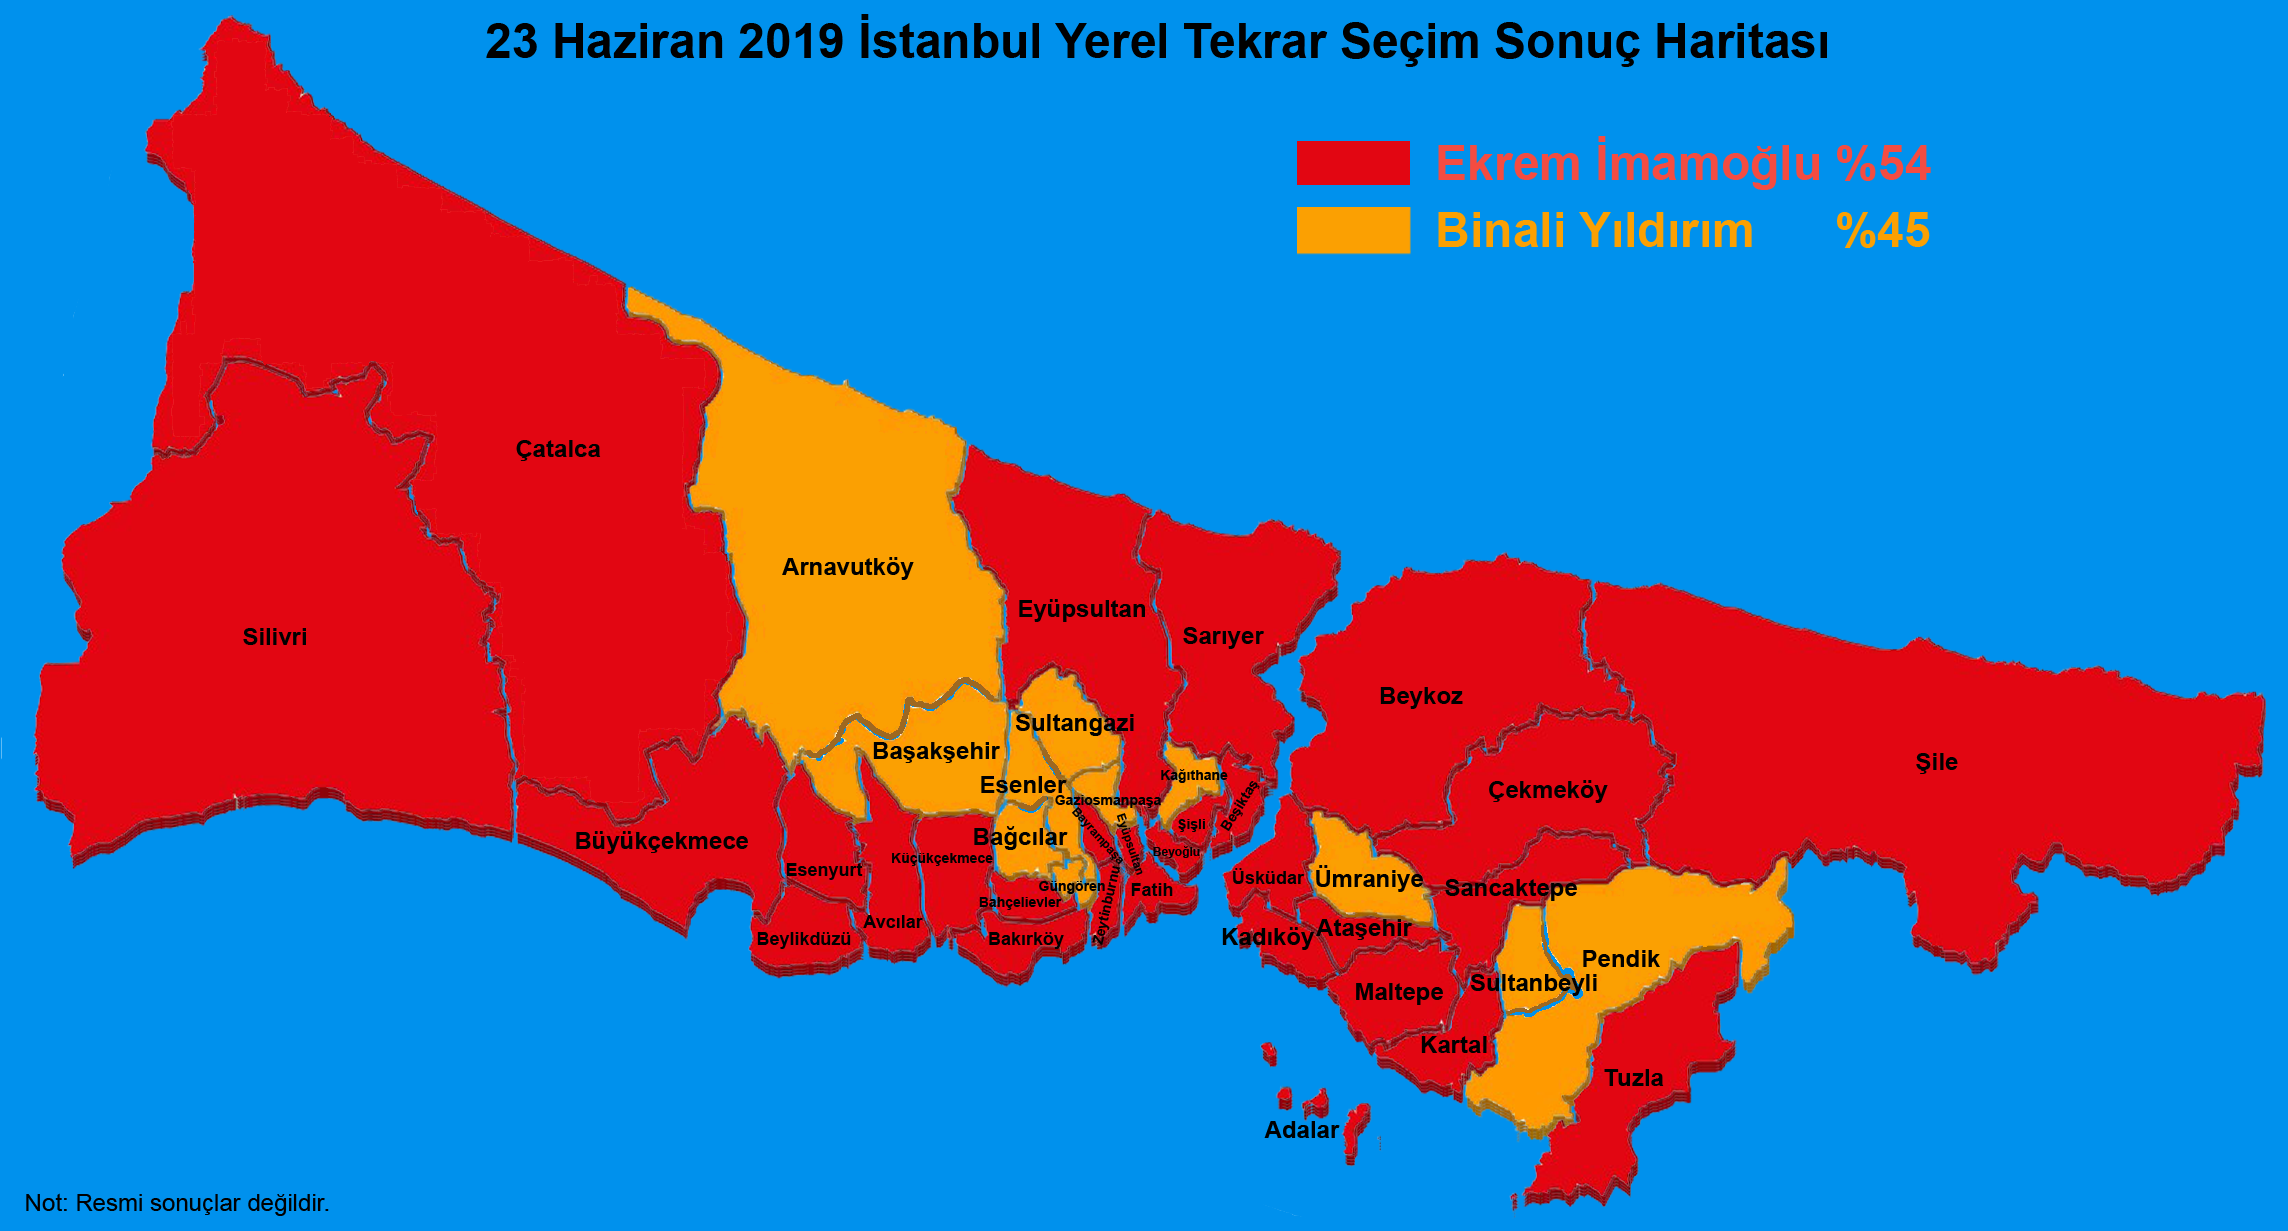 23 Haziran 2019 stanbul Yerel Tekrar Seim Sonu Haritas - partilerin ilelere dalm